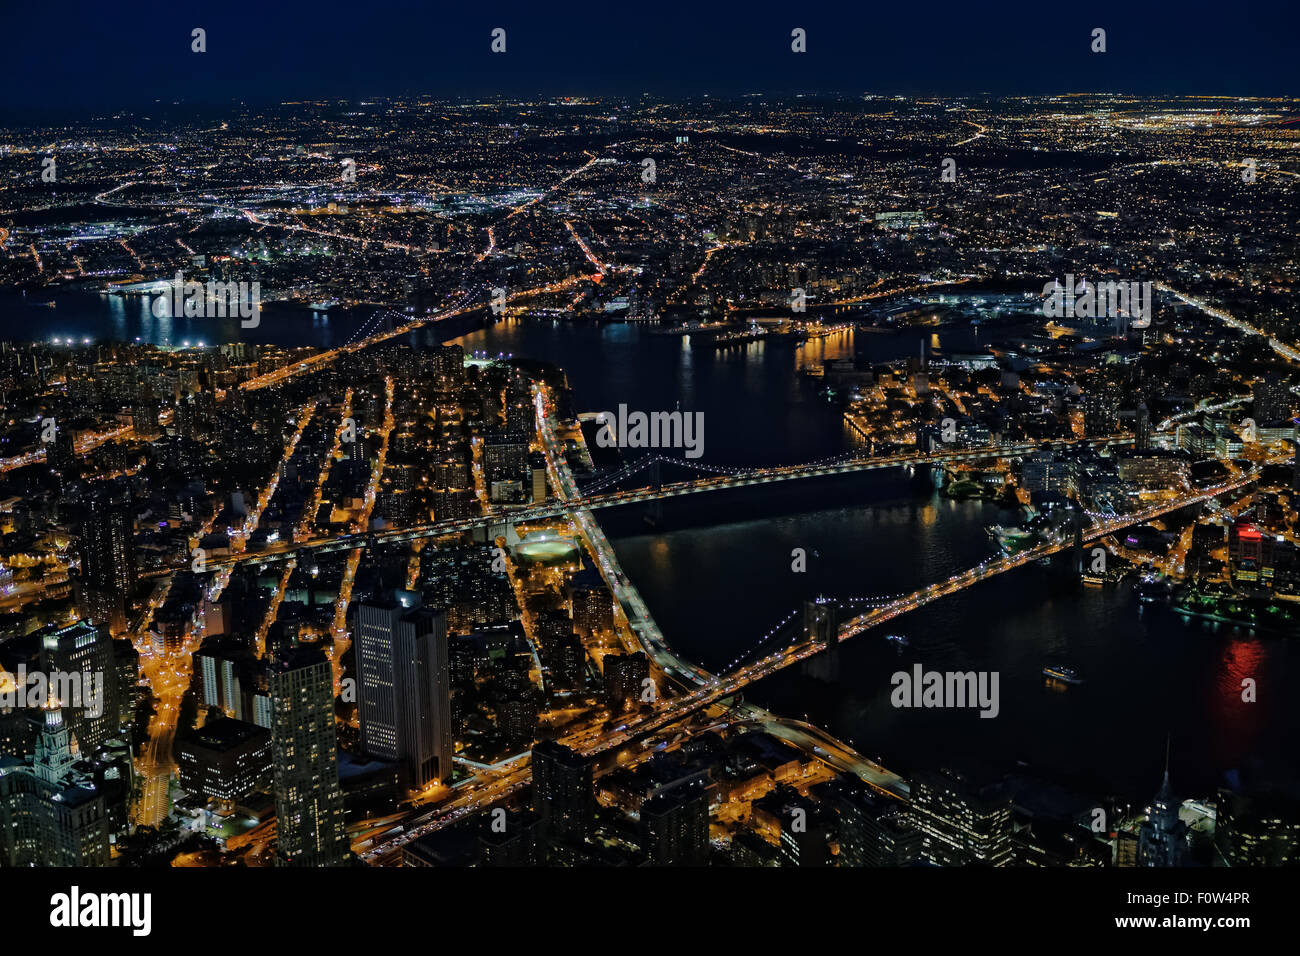 Brooklyn, Manhattan und Williamsburg Brücken Luftaufnahme - ein Blick von oben auf die beleuchtete Lower Manhattan in New York City, die im Stadtbezirk Brooklyn und der Brooklyn, Manhattan und Williamsburg Brücken während der Blauen Stunde der Dämmerung. Stockfoto